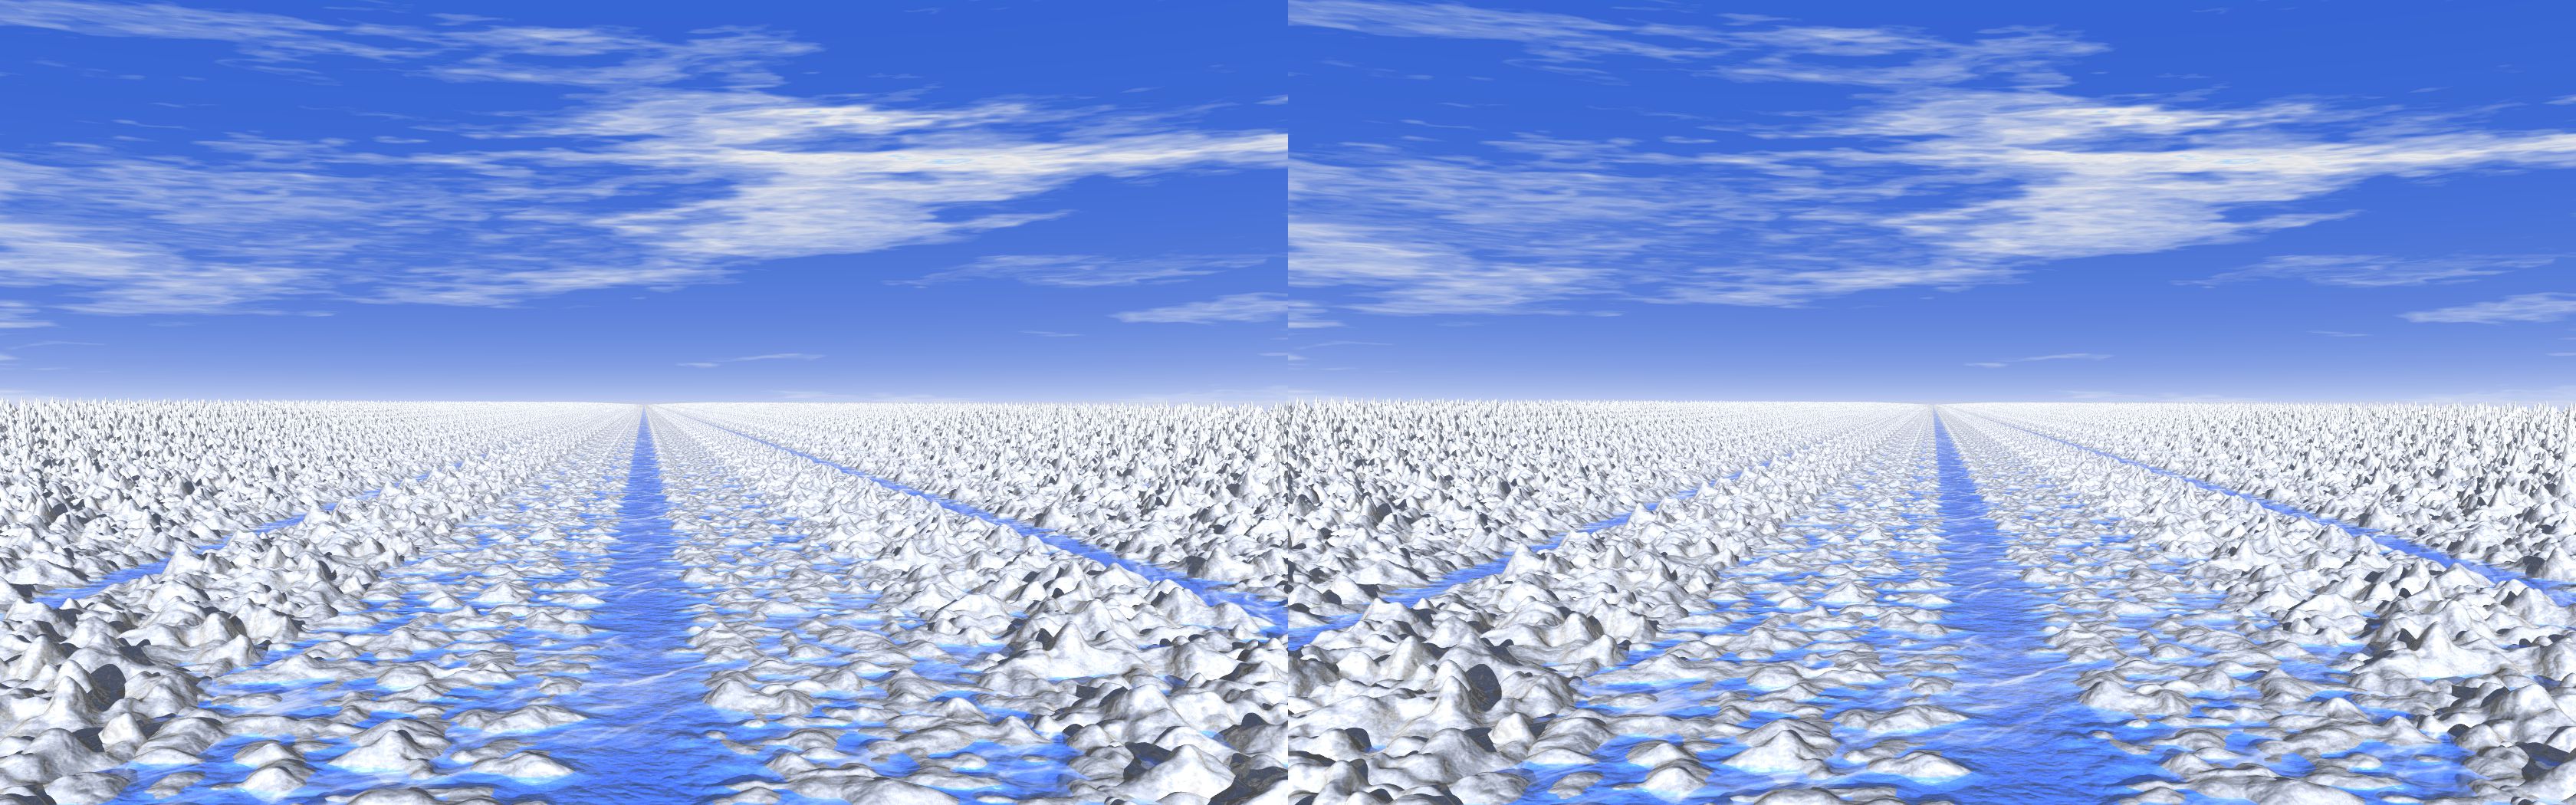 Cyan Ice Path - 3D stereo JPS image